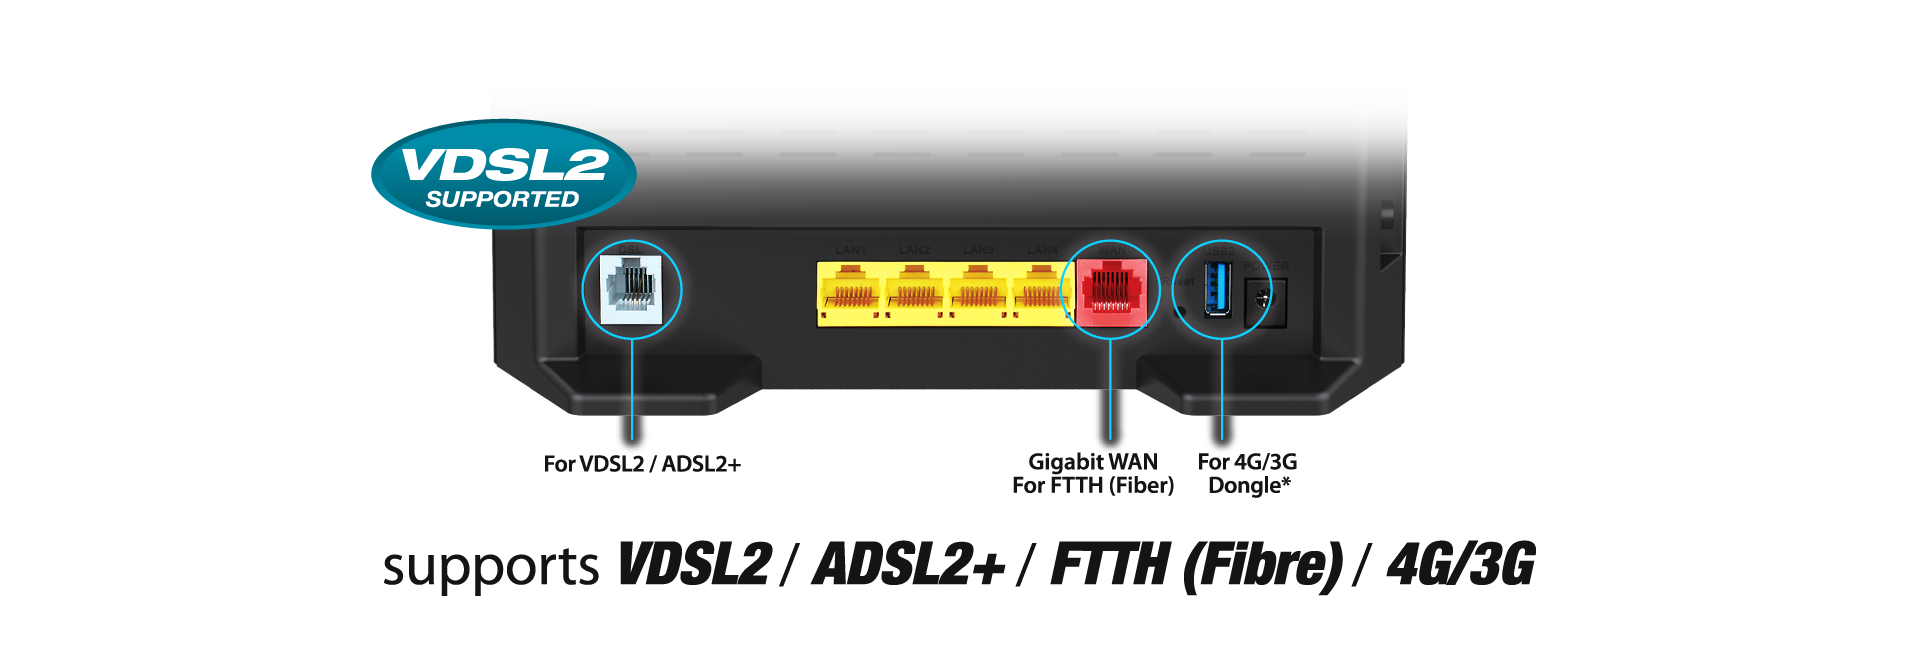 DSL-2877AL_VDSL_ADSL